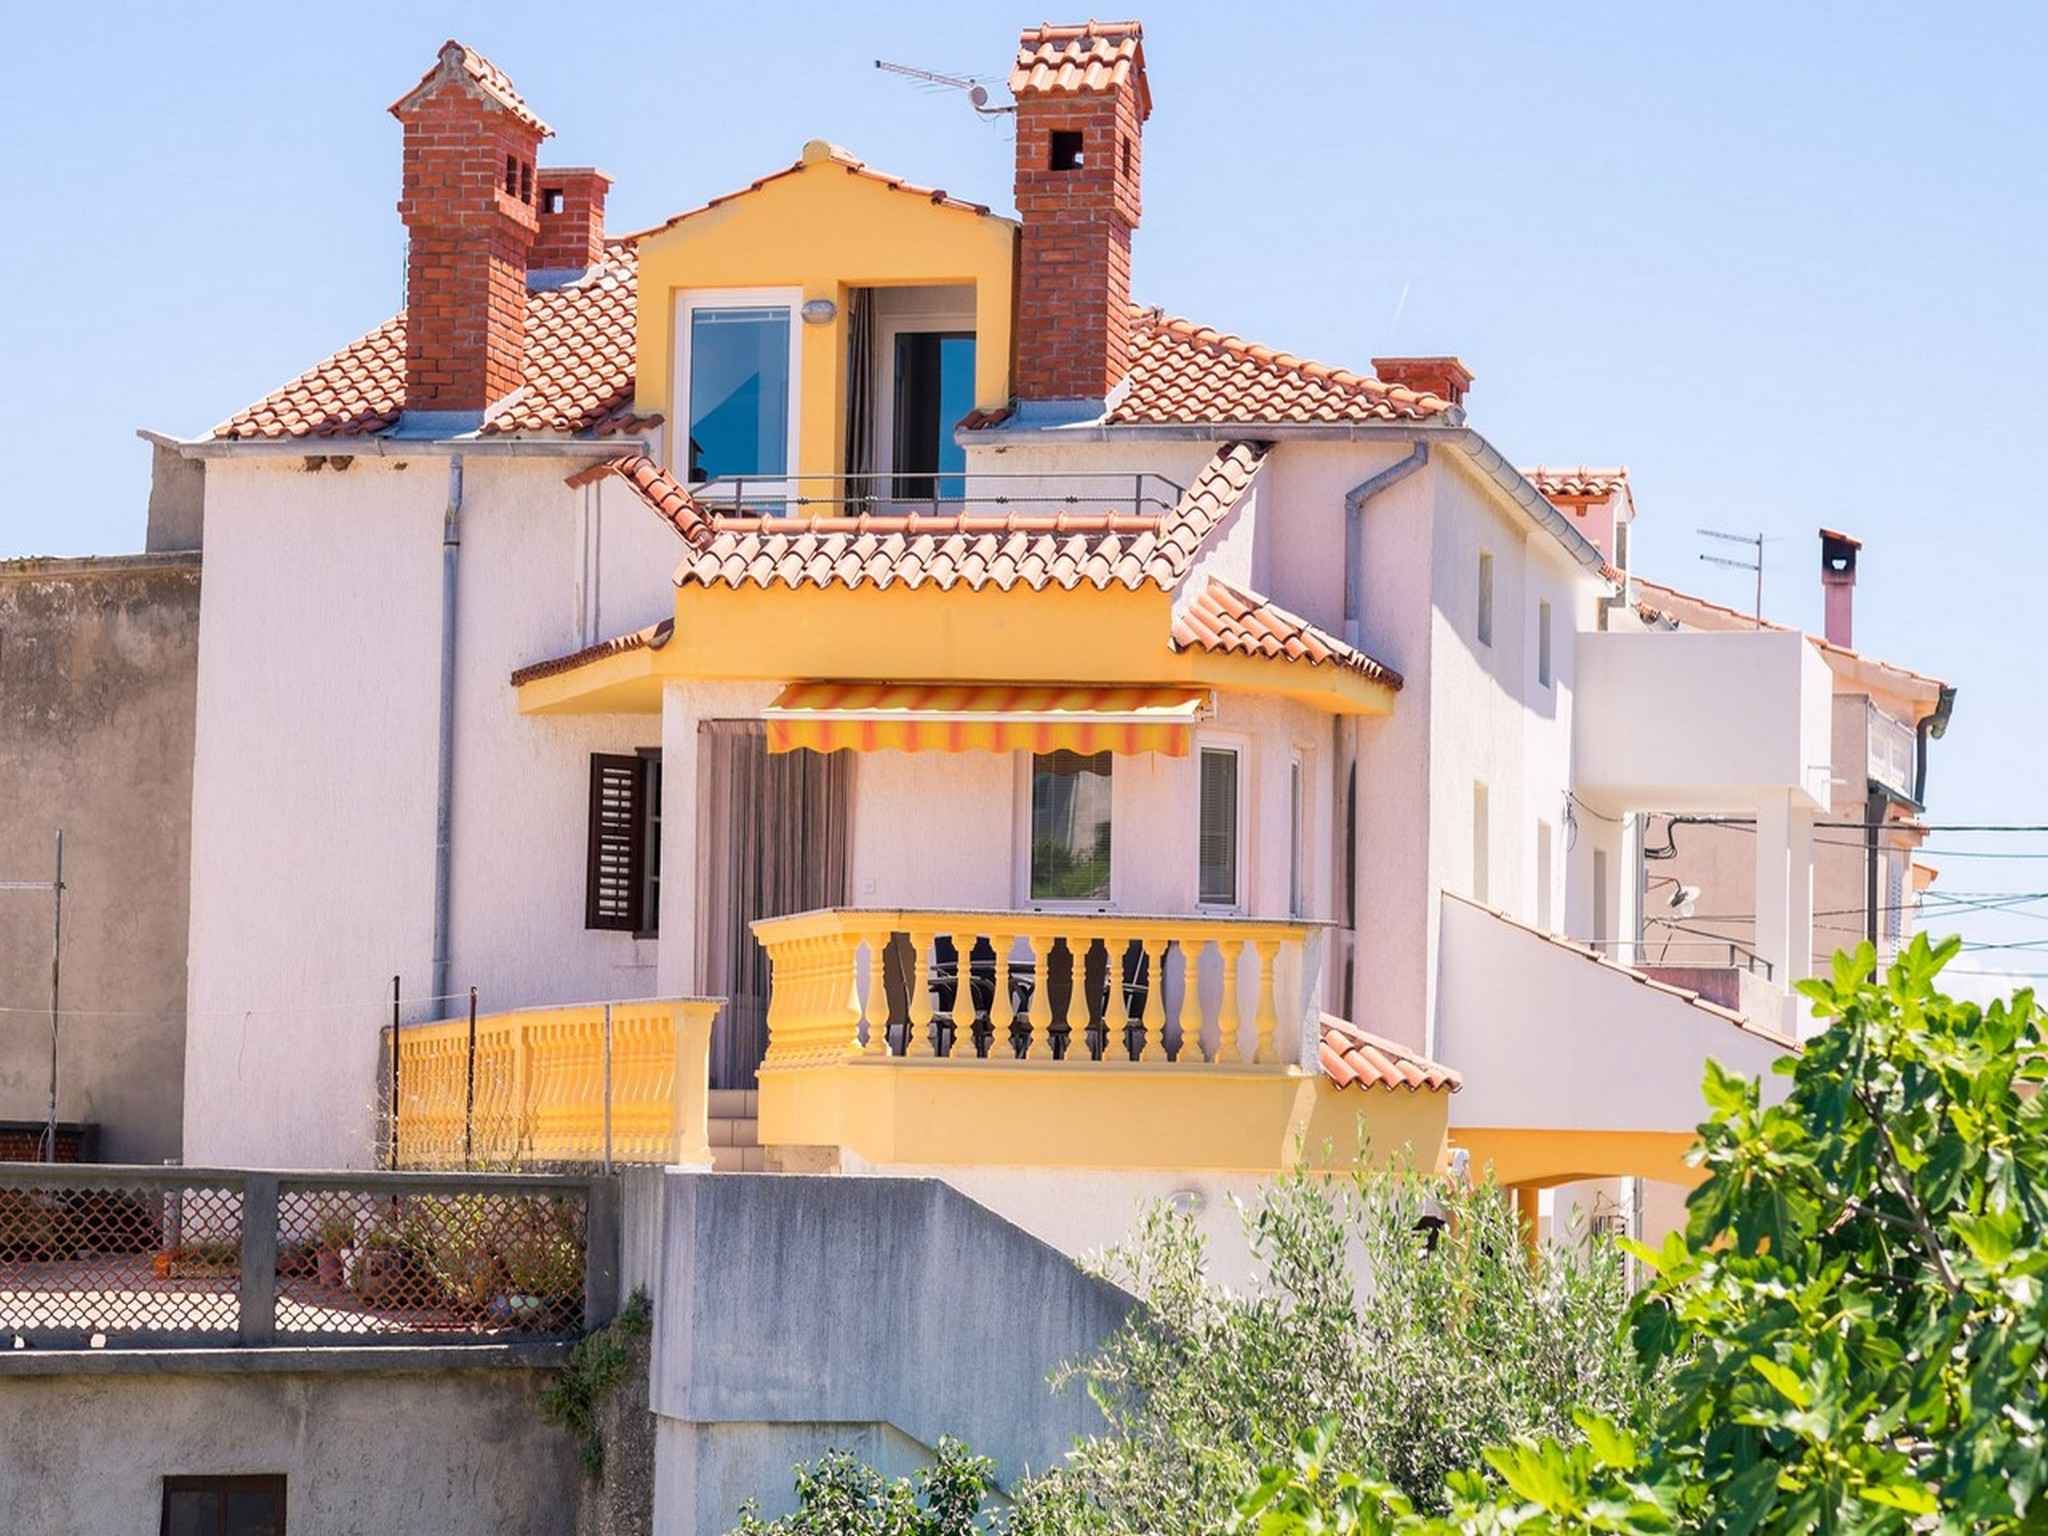 Ferienwohnung mit Balkon, modern eingerichtet   Vrbnik